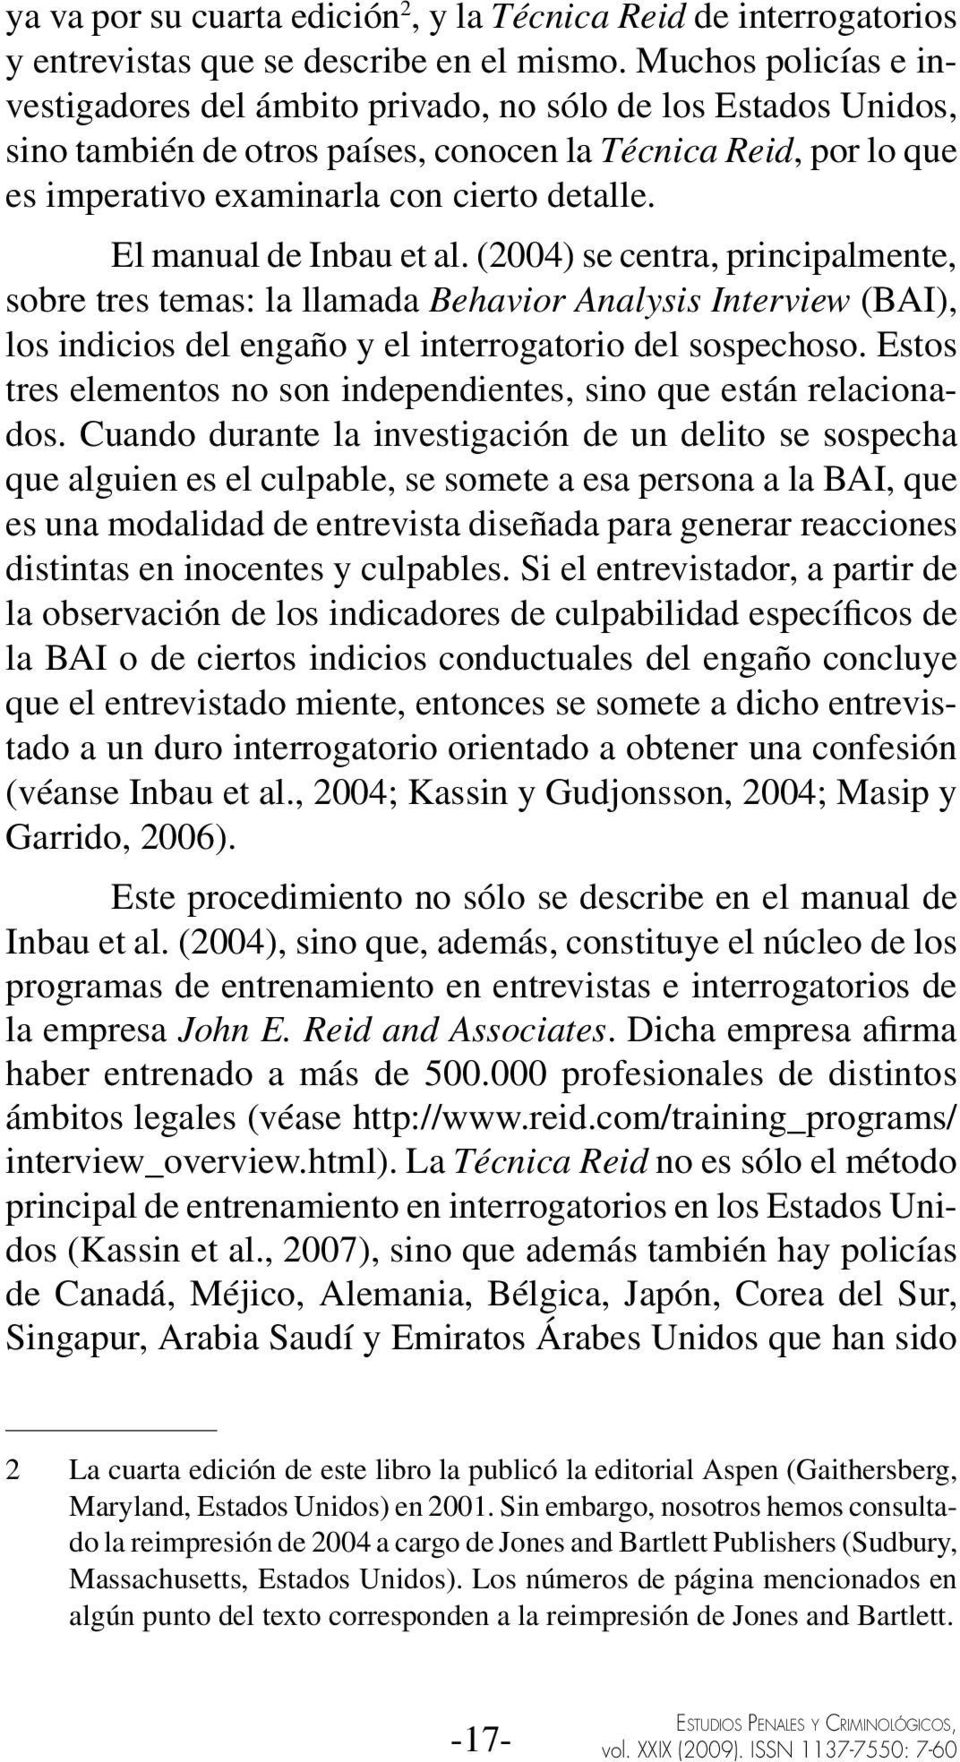 El manual de Inbau et al. (2004) se centra, principalmente, sobre tres temas: la llamada Behavior Analysis Interview (BAI), los indicios del engaño y el interrogatorio del sospechoso.